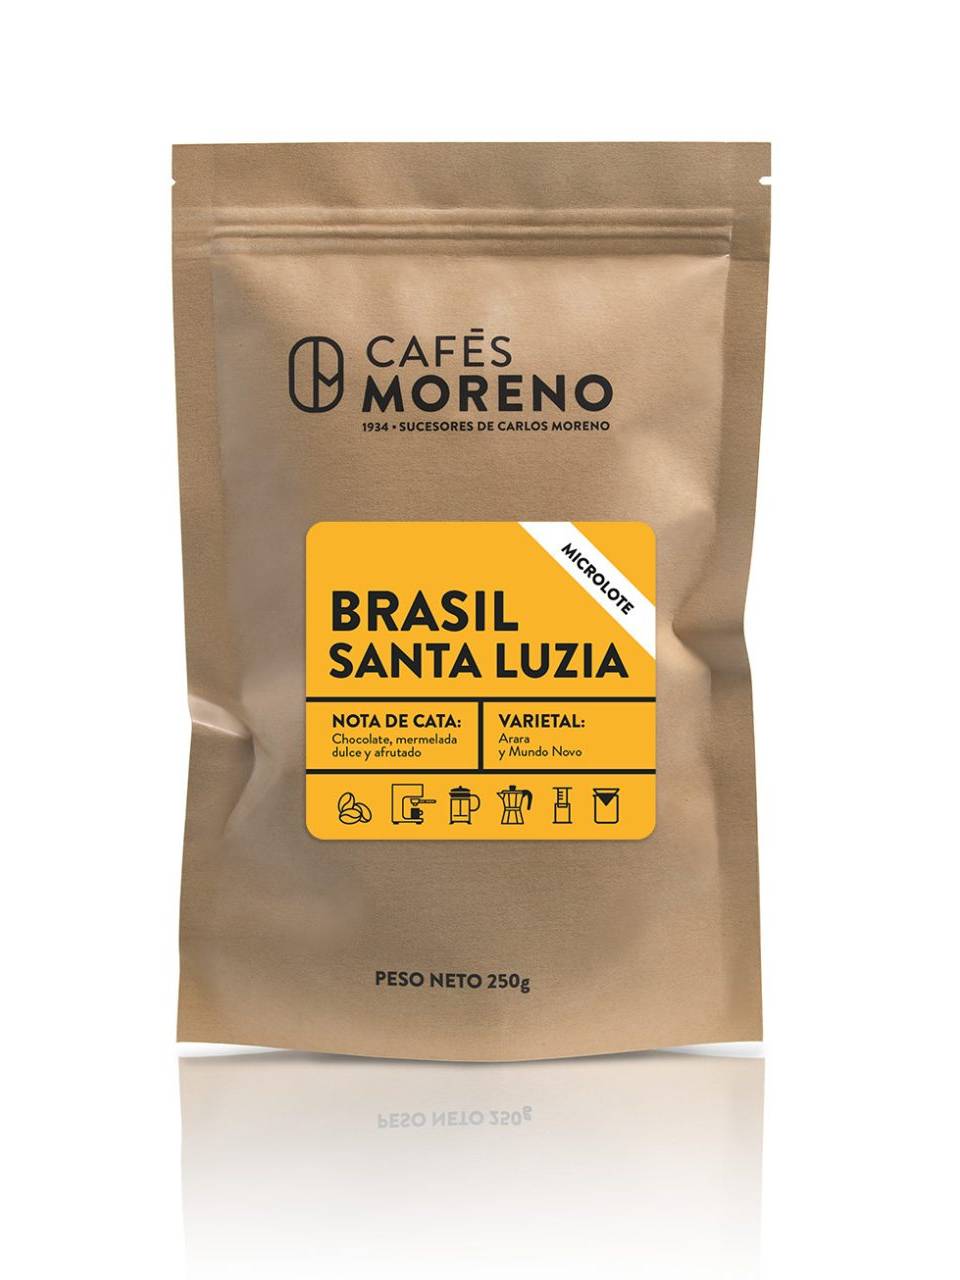 imagen de bolsa de café con la etiqueta de nuevo microlote Brasil Santa Luzia